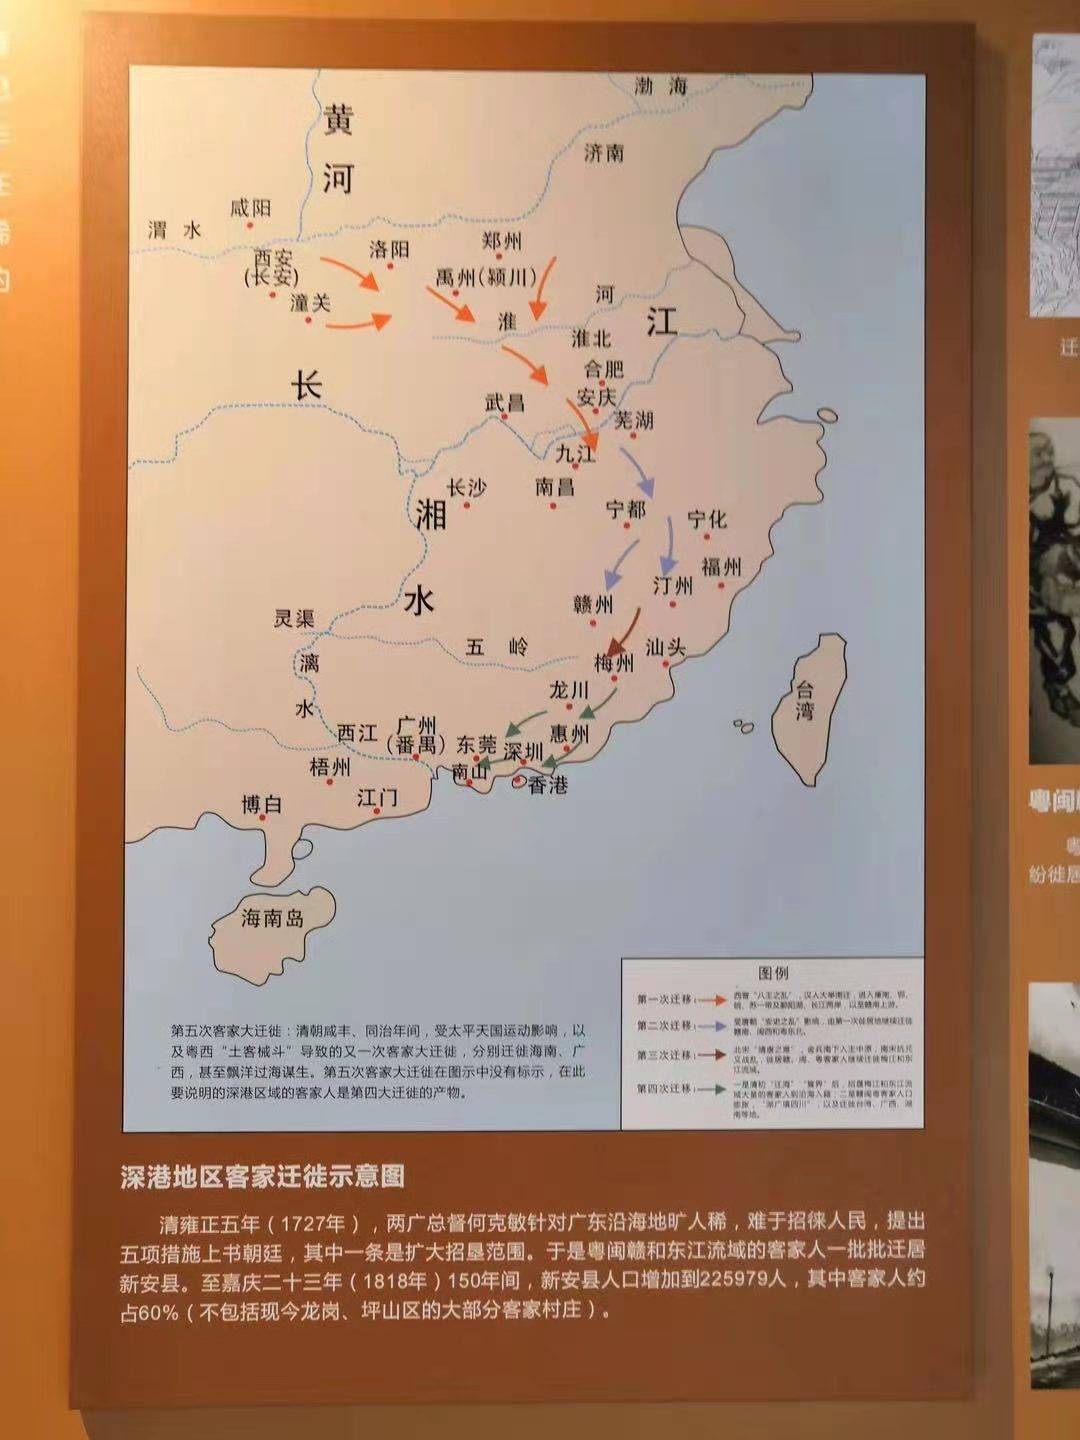 深港地区客家迁徙示意图香港是客家人从内陆走向海外的前哨站,从而